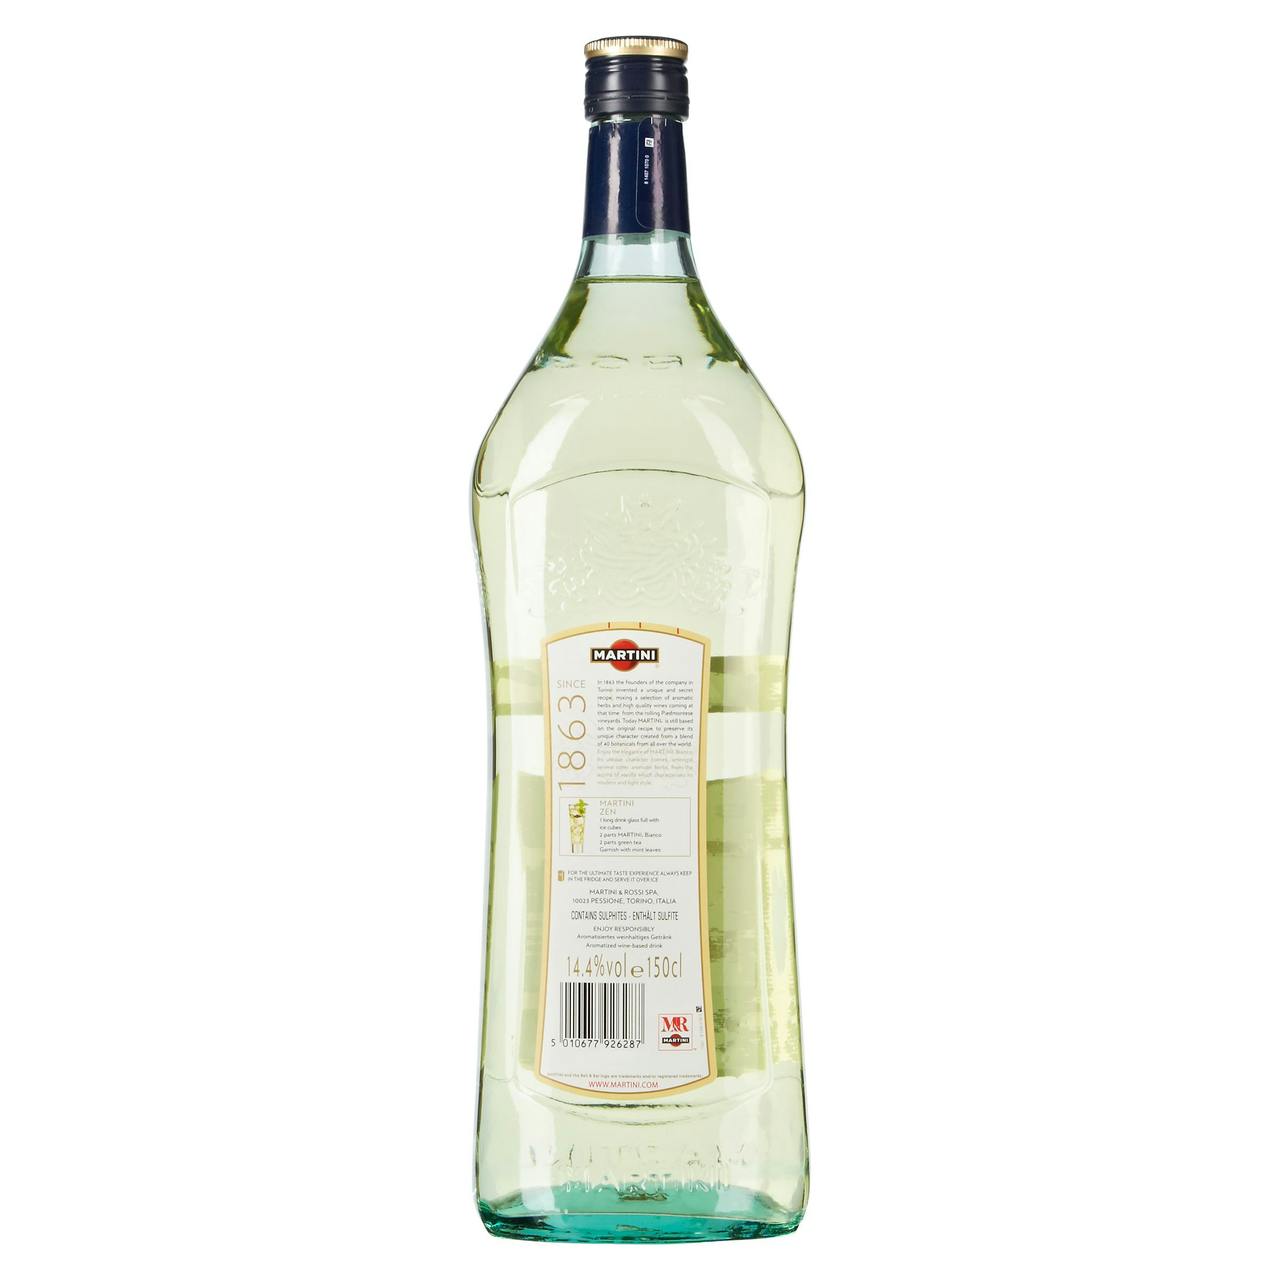 Martini blanc 14.4% 100cl - Maison des vins